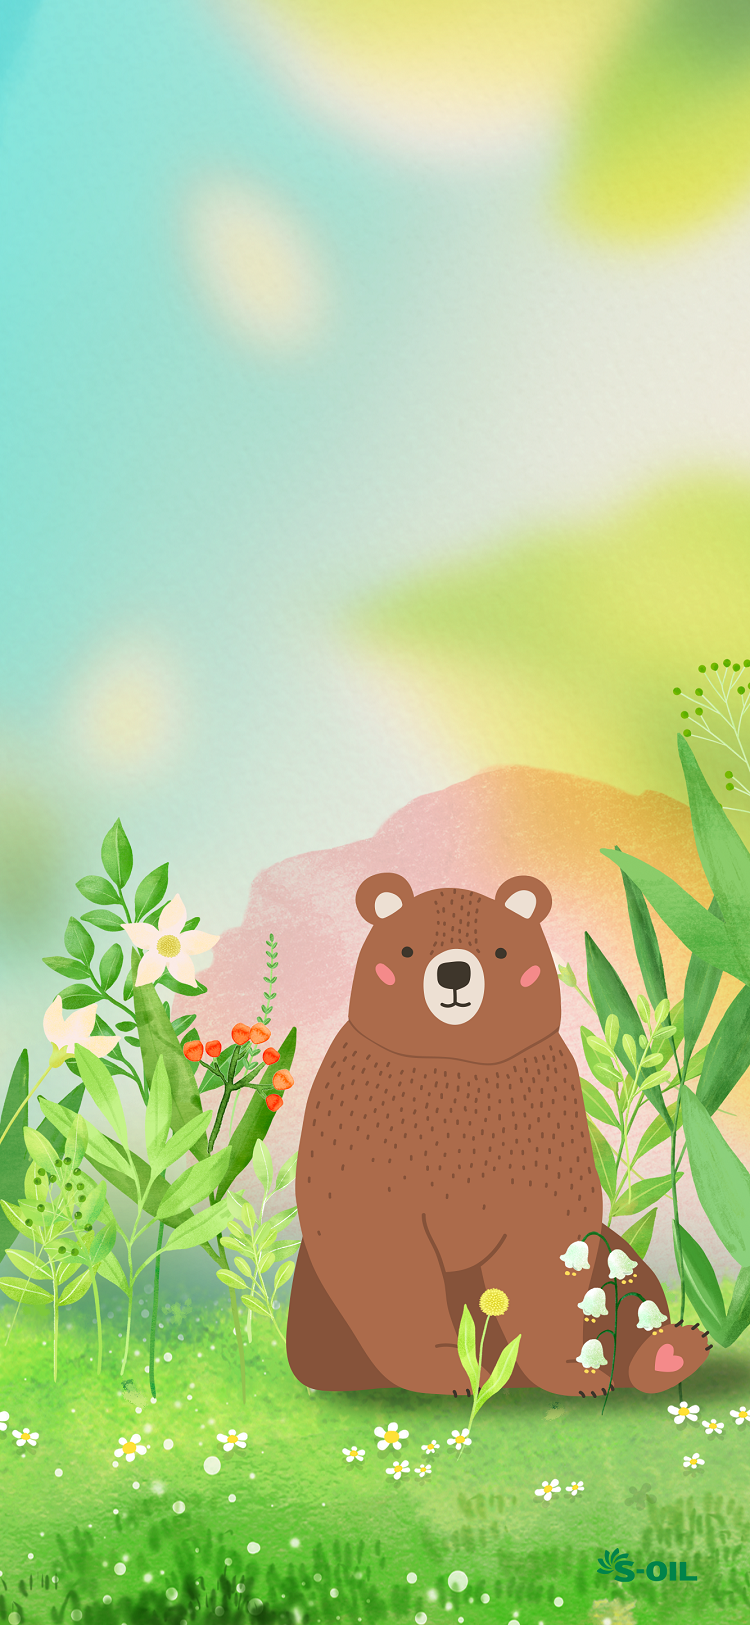 배경화면으로 ‘봄날의 곰’을 맞이해봄!